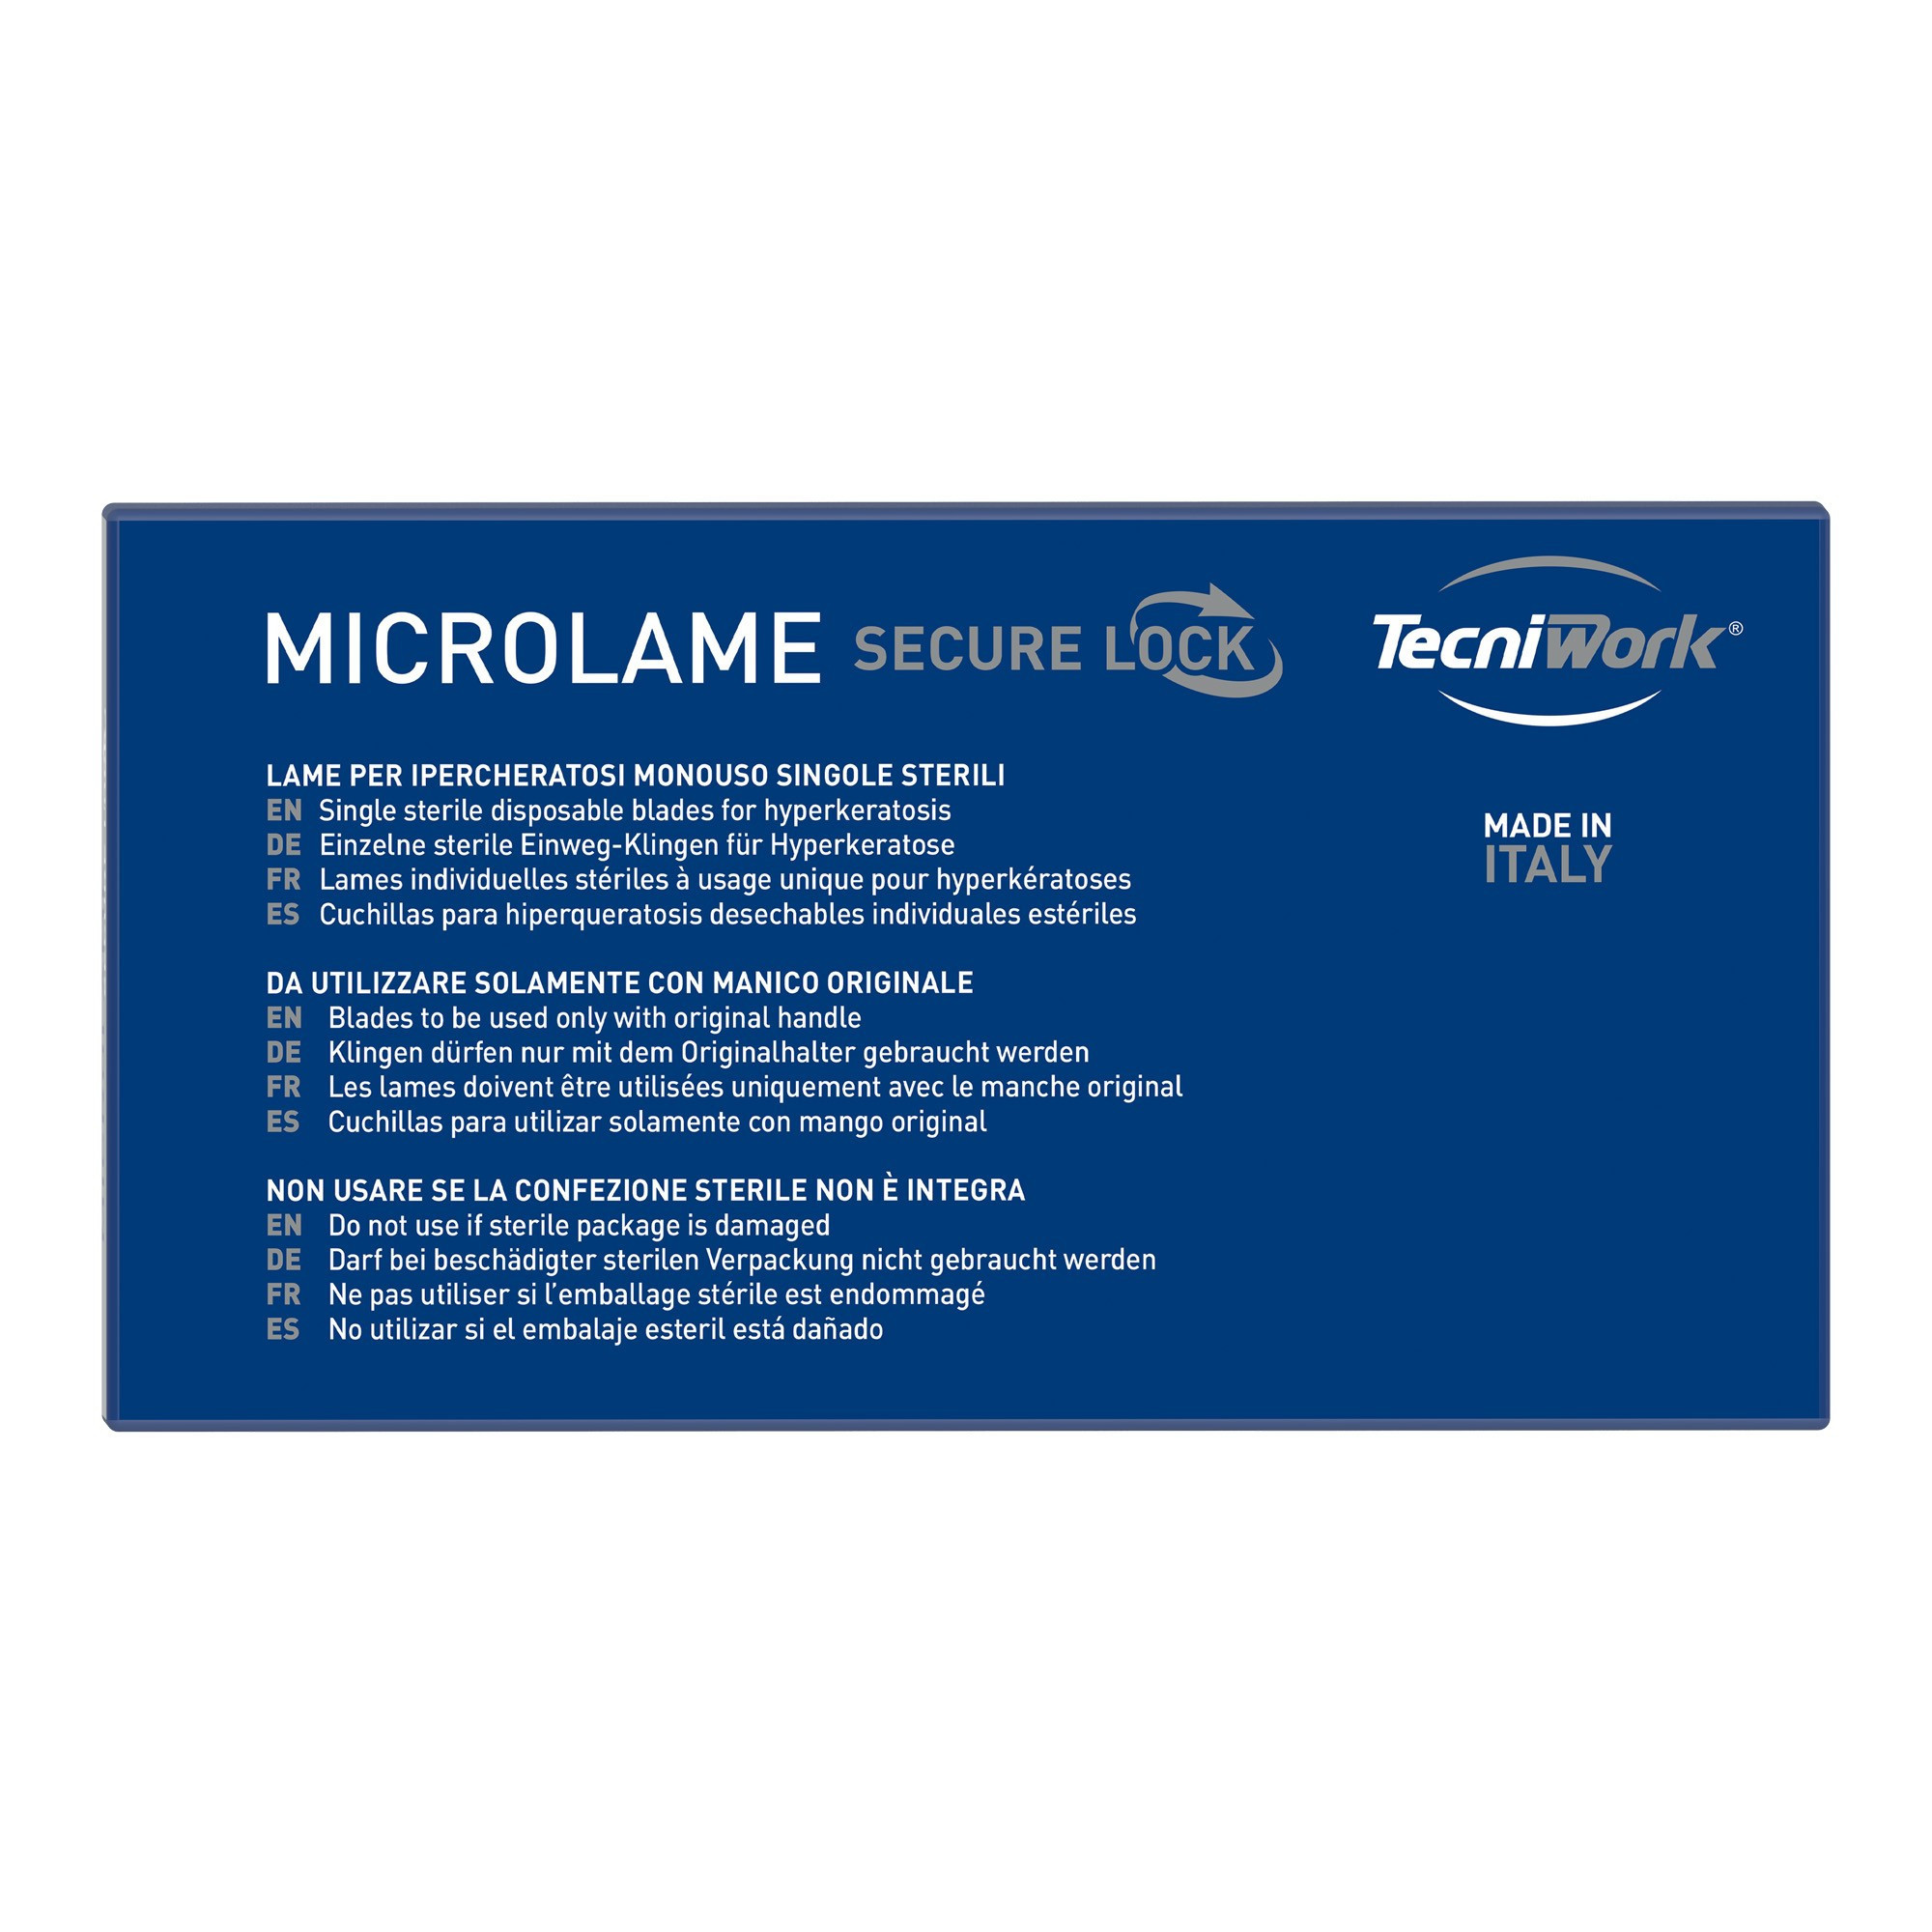 Invito alla prova Manico e Microlame Secure Lock misure assortite 40 pz